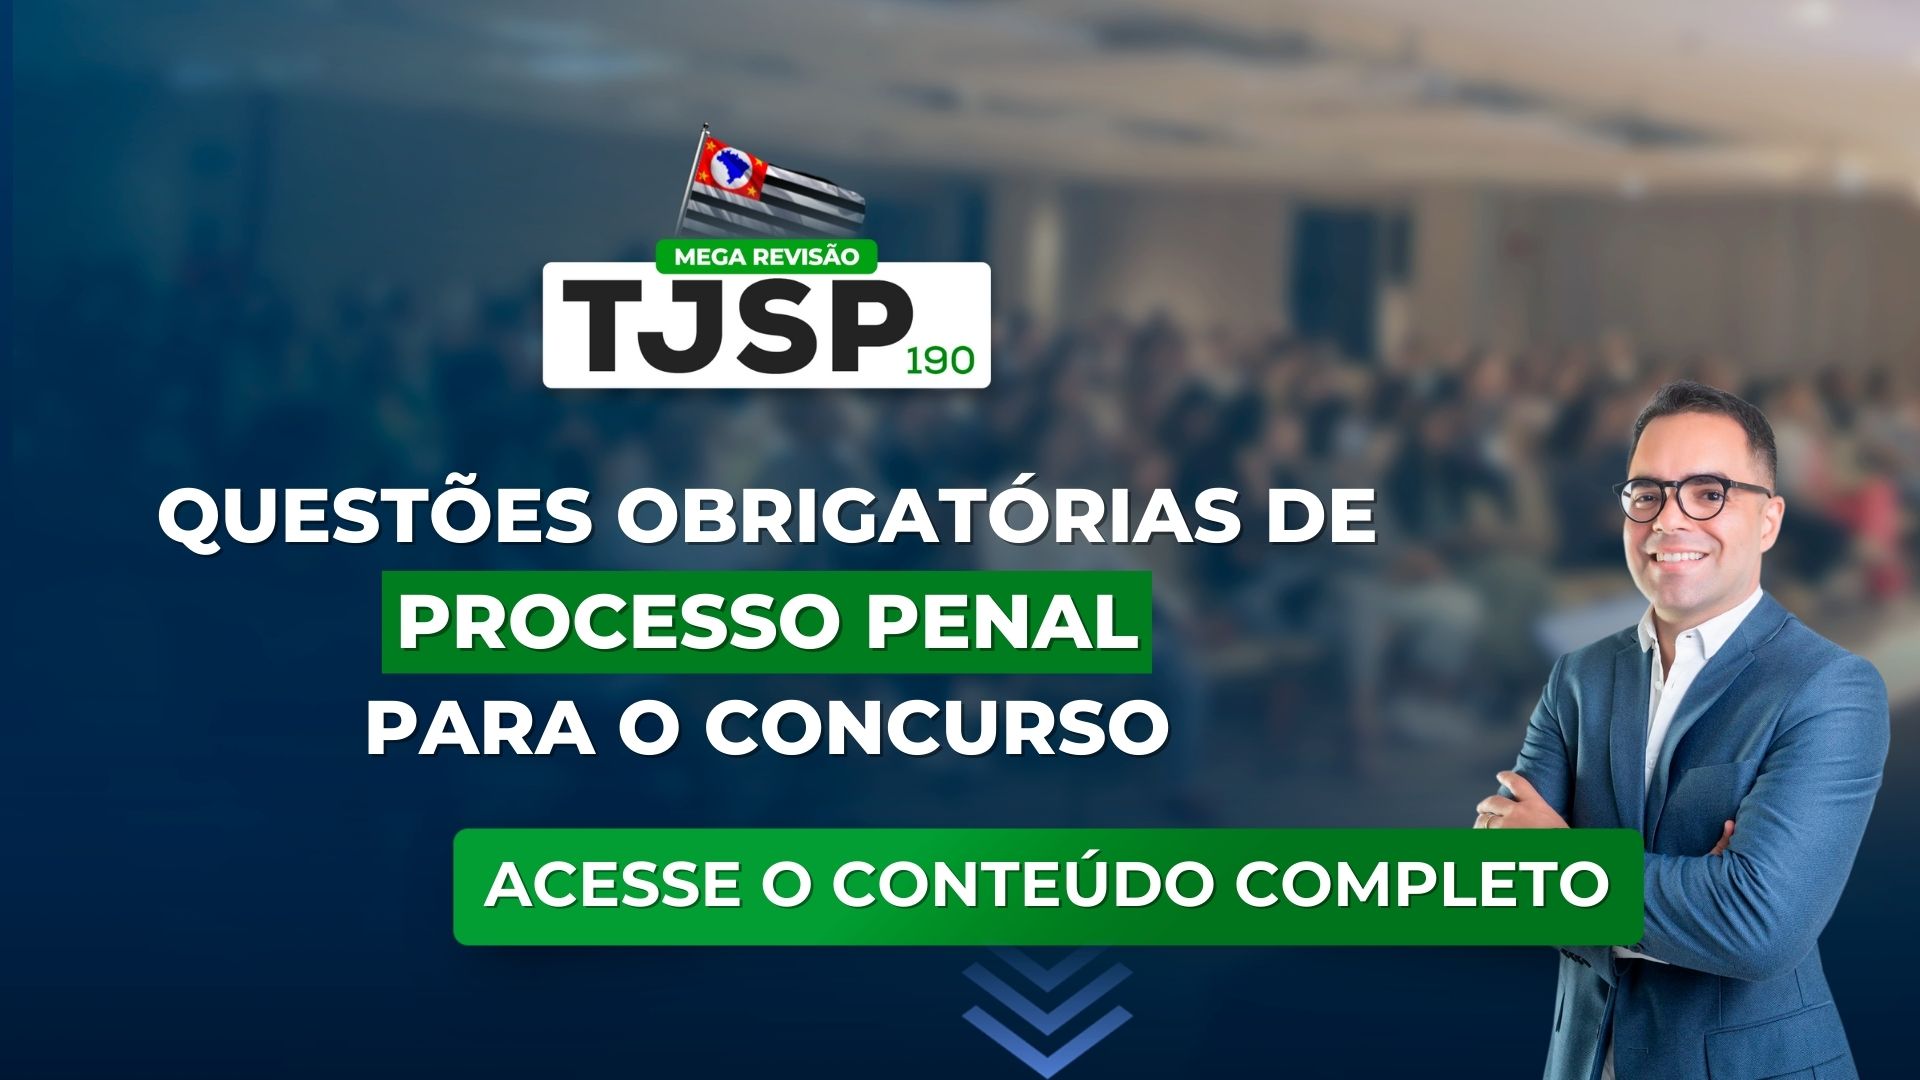 TJSP 190: Questões obrigatórias de Processo Penal para o concurso